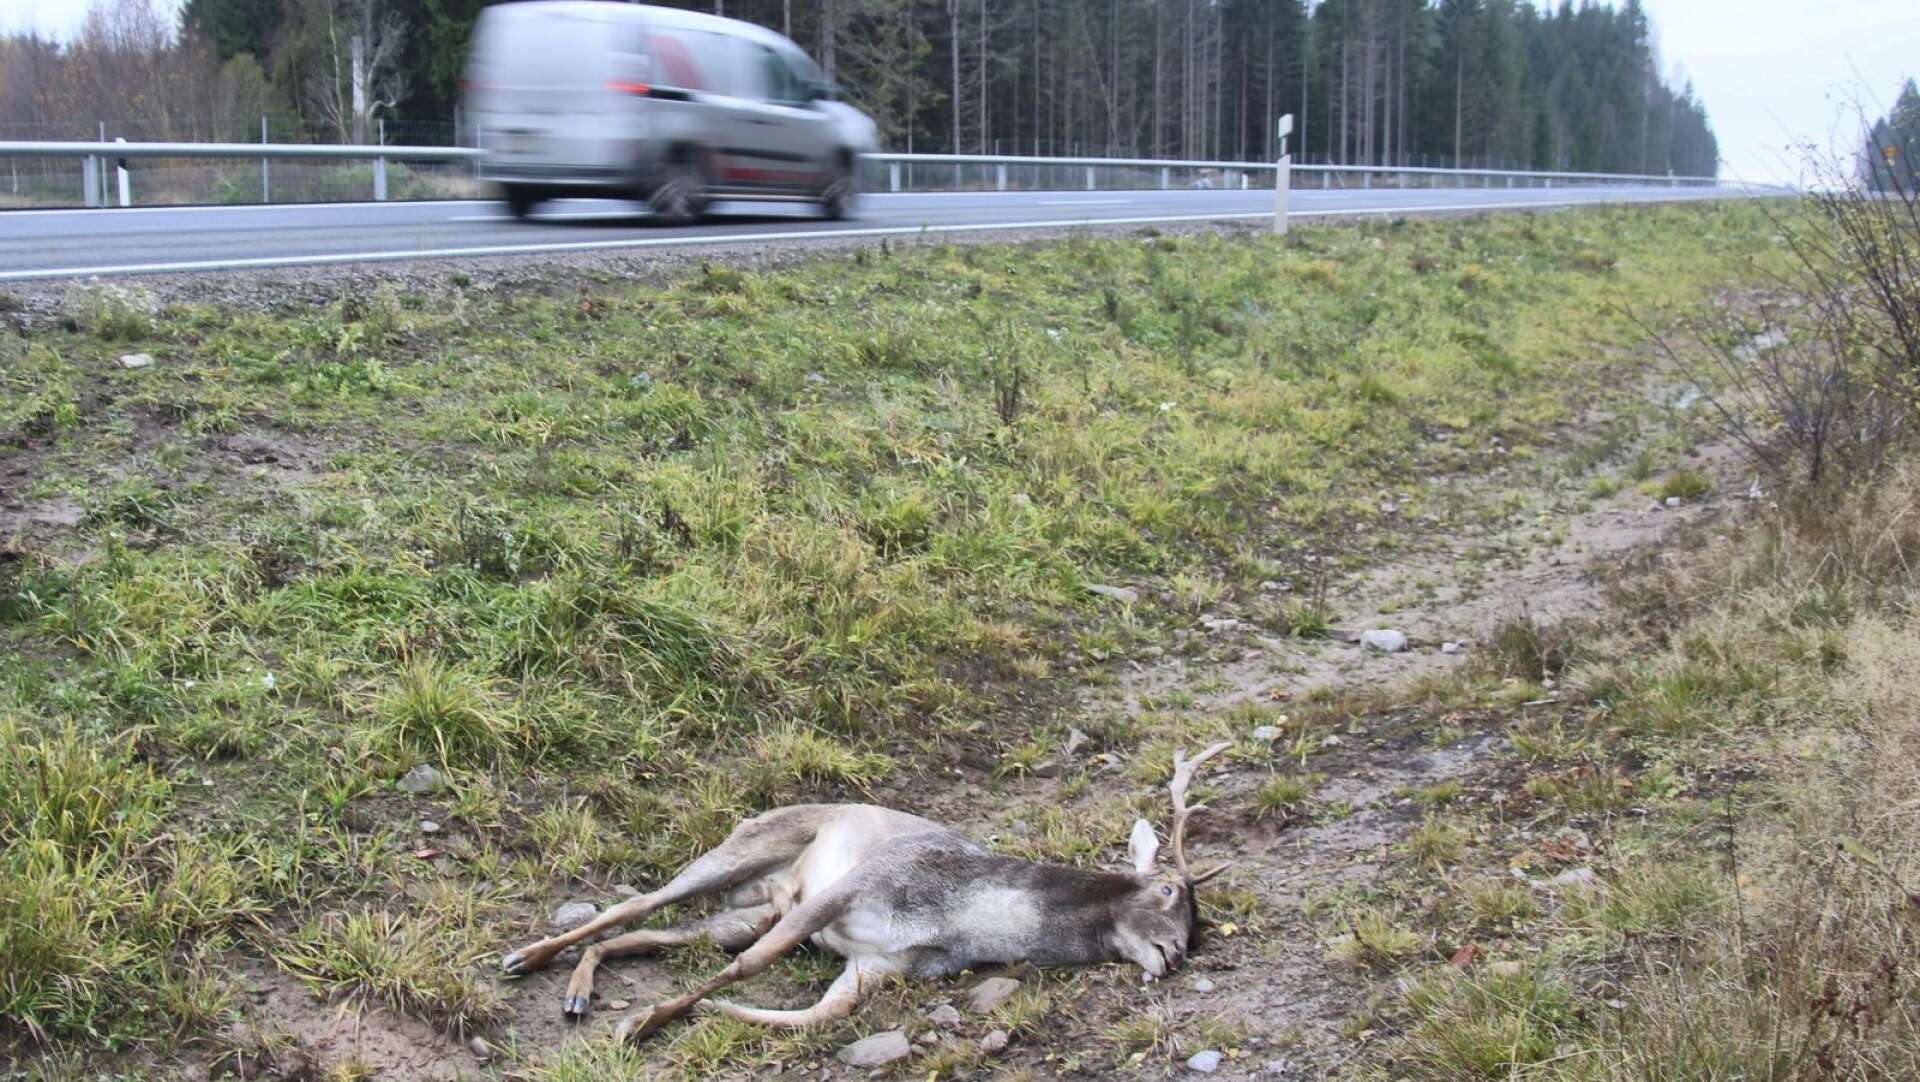 Väg 172 är en av de mest olycksdrabbade vägarna i Västra Götaland när det gäller viltolyckor. 